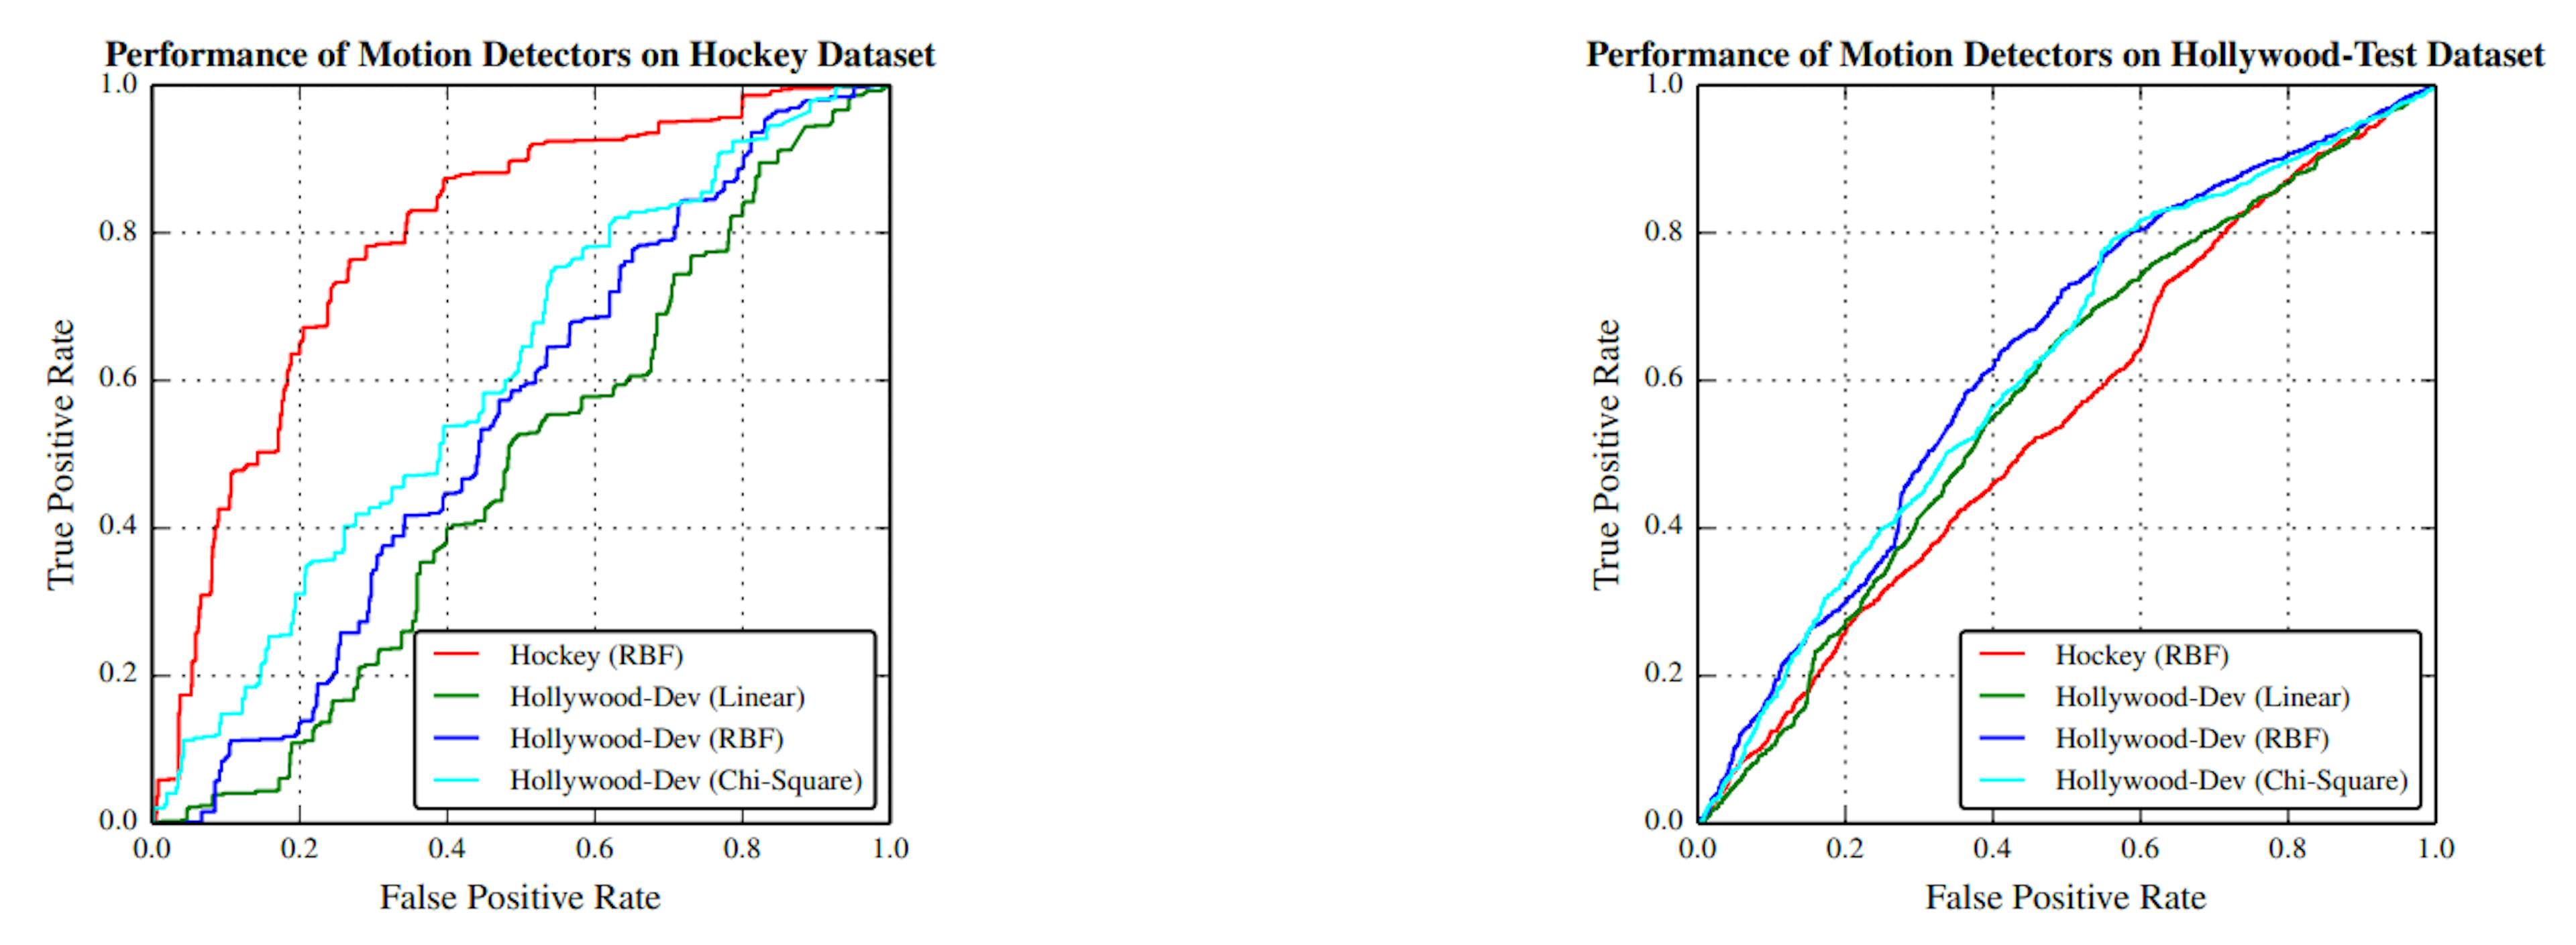 Figura 4.5: Desempenho dos classificadores de recursos Motion nos conjuntos de dados Hockey e HollywoodTest. A curva vermelha é para o classificador treinado no conjunto de dados de hóquei e as três restantes são para os três classificadores treinados no conjunto de dados Hollywood-Dev com kernels Linear, RBF e Qui-Quadrado.